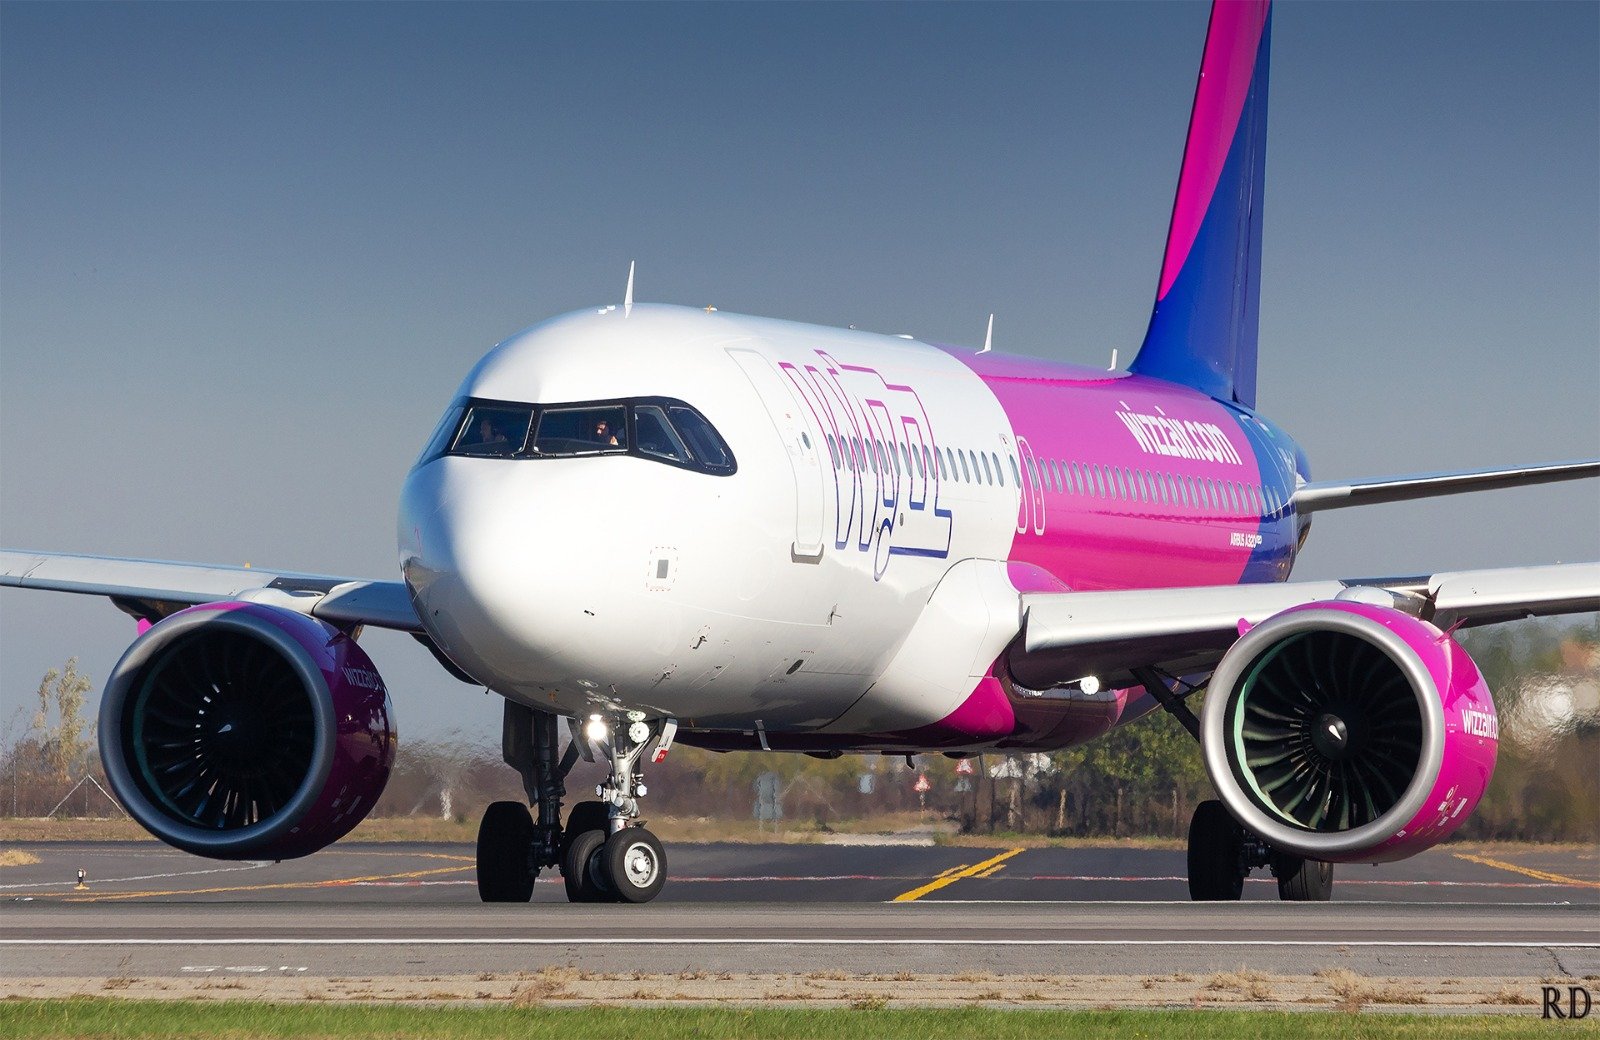  Iași-Antalya în sezonul estival, cursă aeriană propusă pentru aprobare de Wizz Air